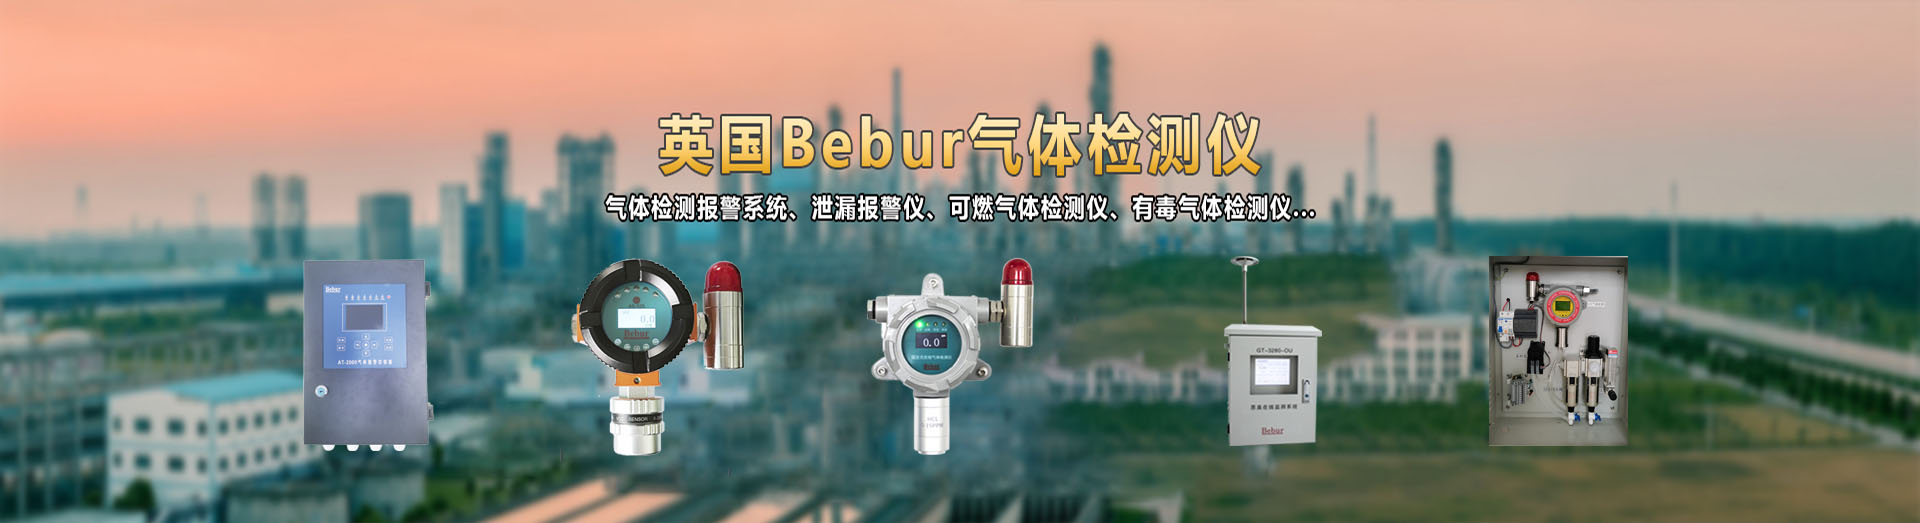 英国Bebur品牌进口过氧化氢检测仪系列产品